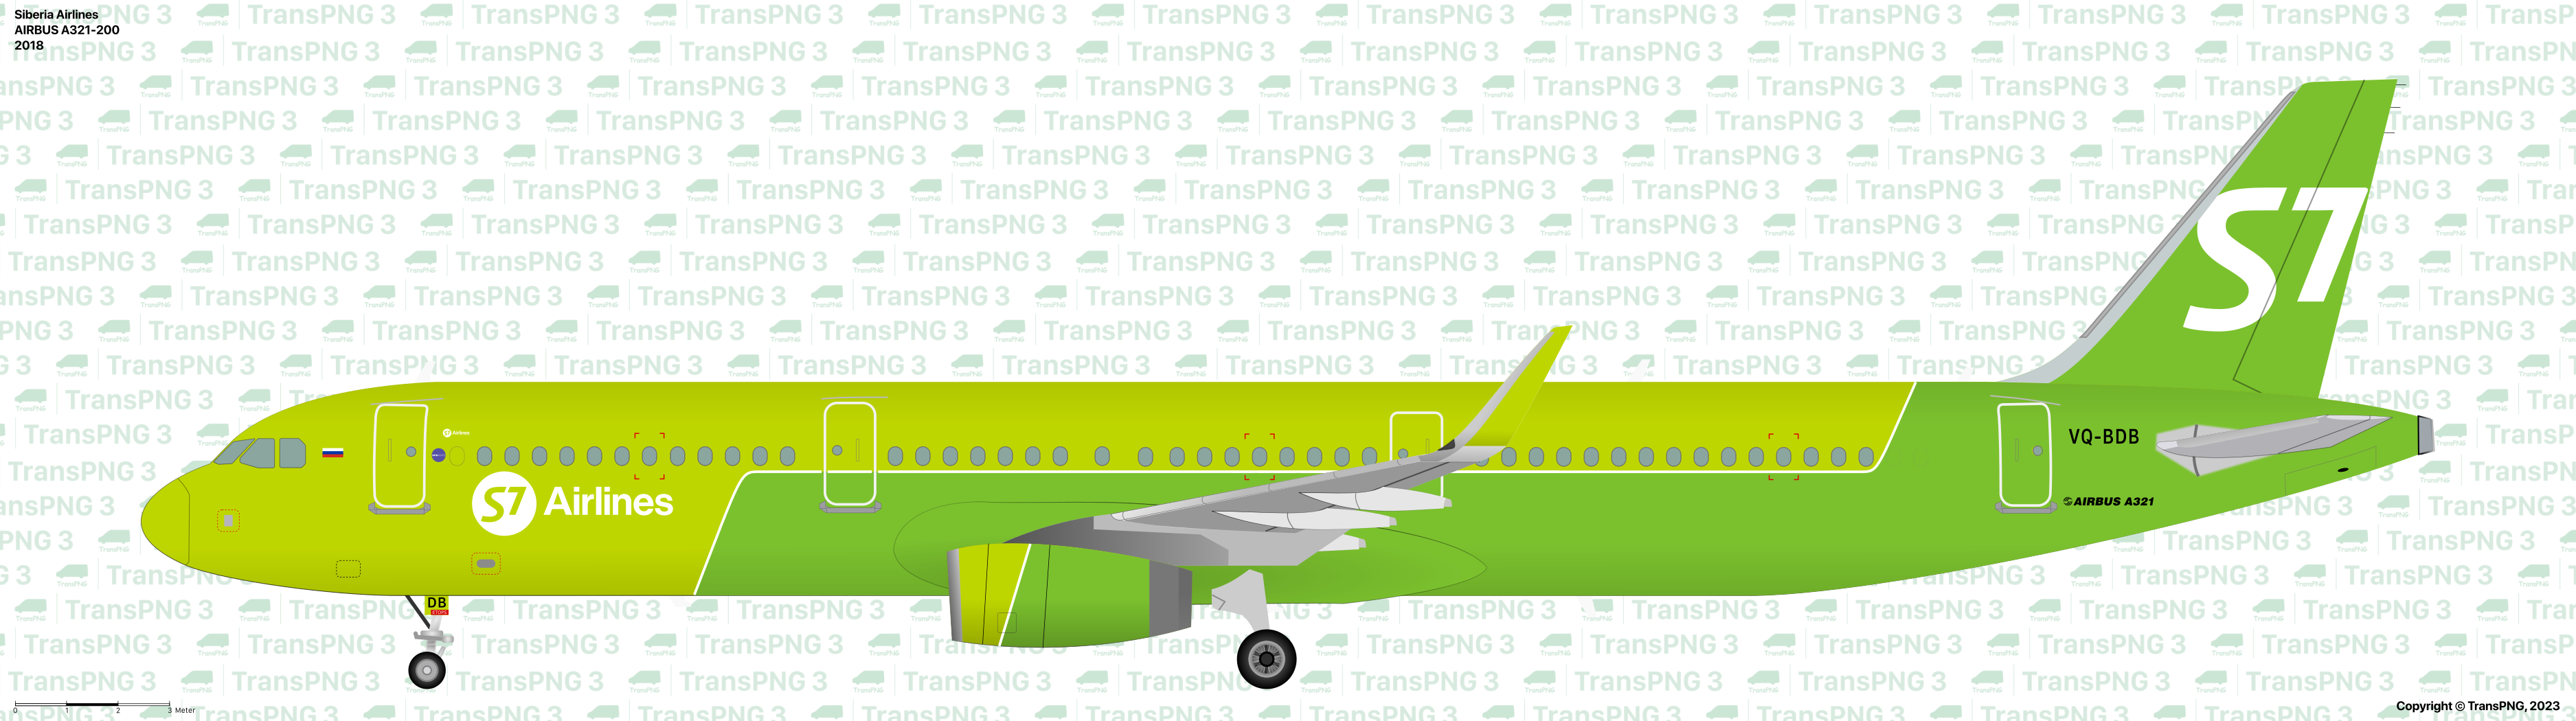 TransPNG.net | 分享世界各地多種交通工具的優秀繪圖 - 客機 53210330259_24b1c28b35_o